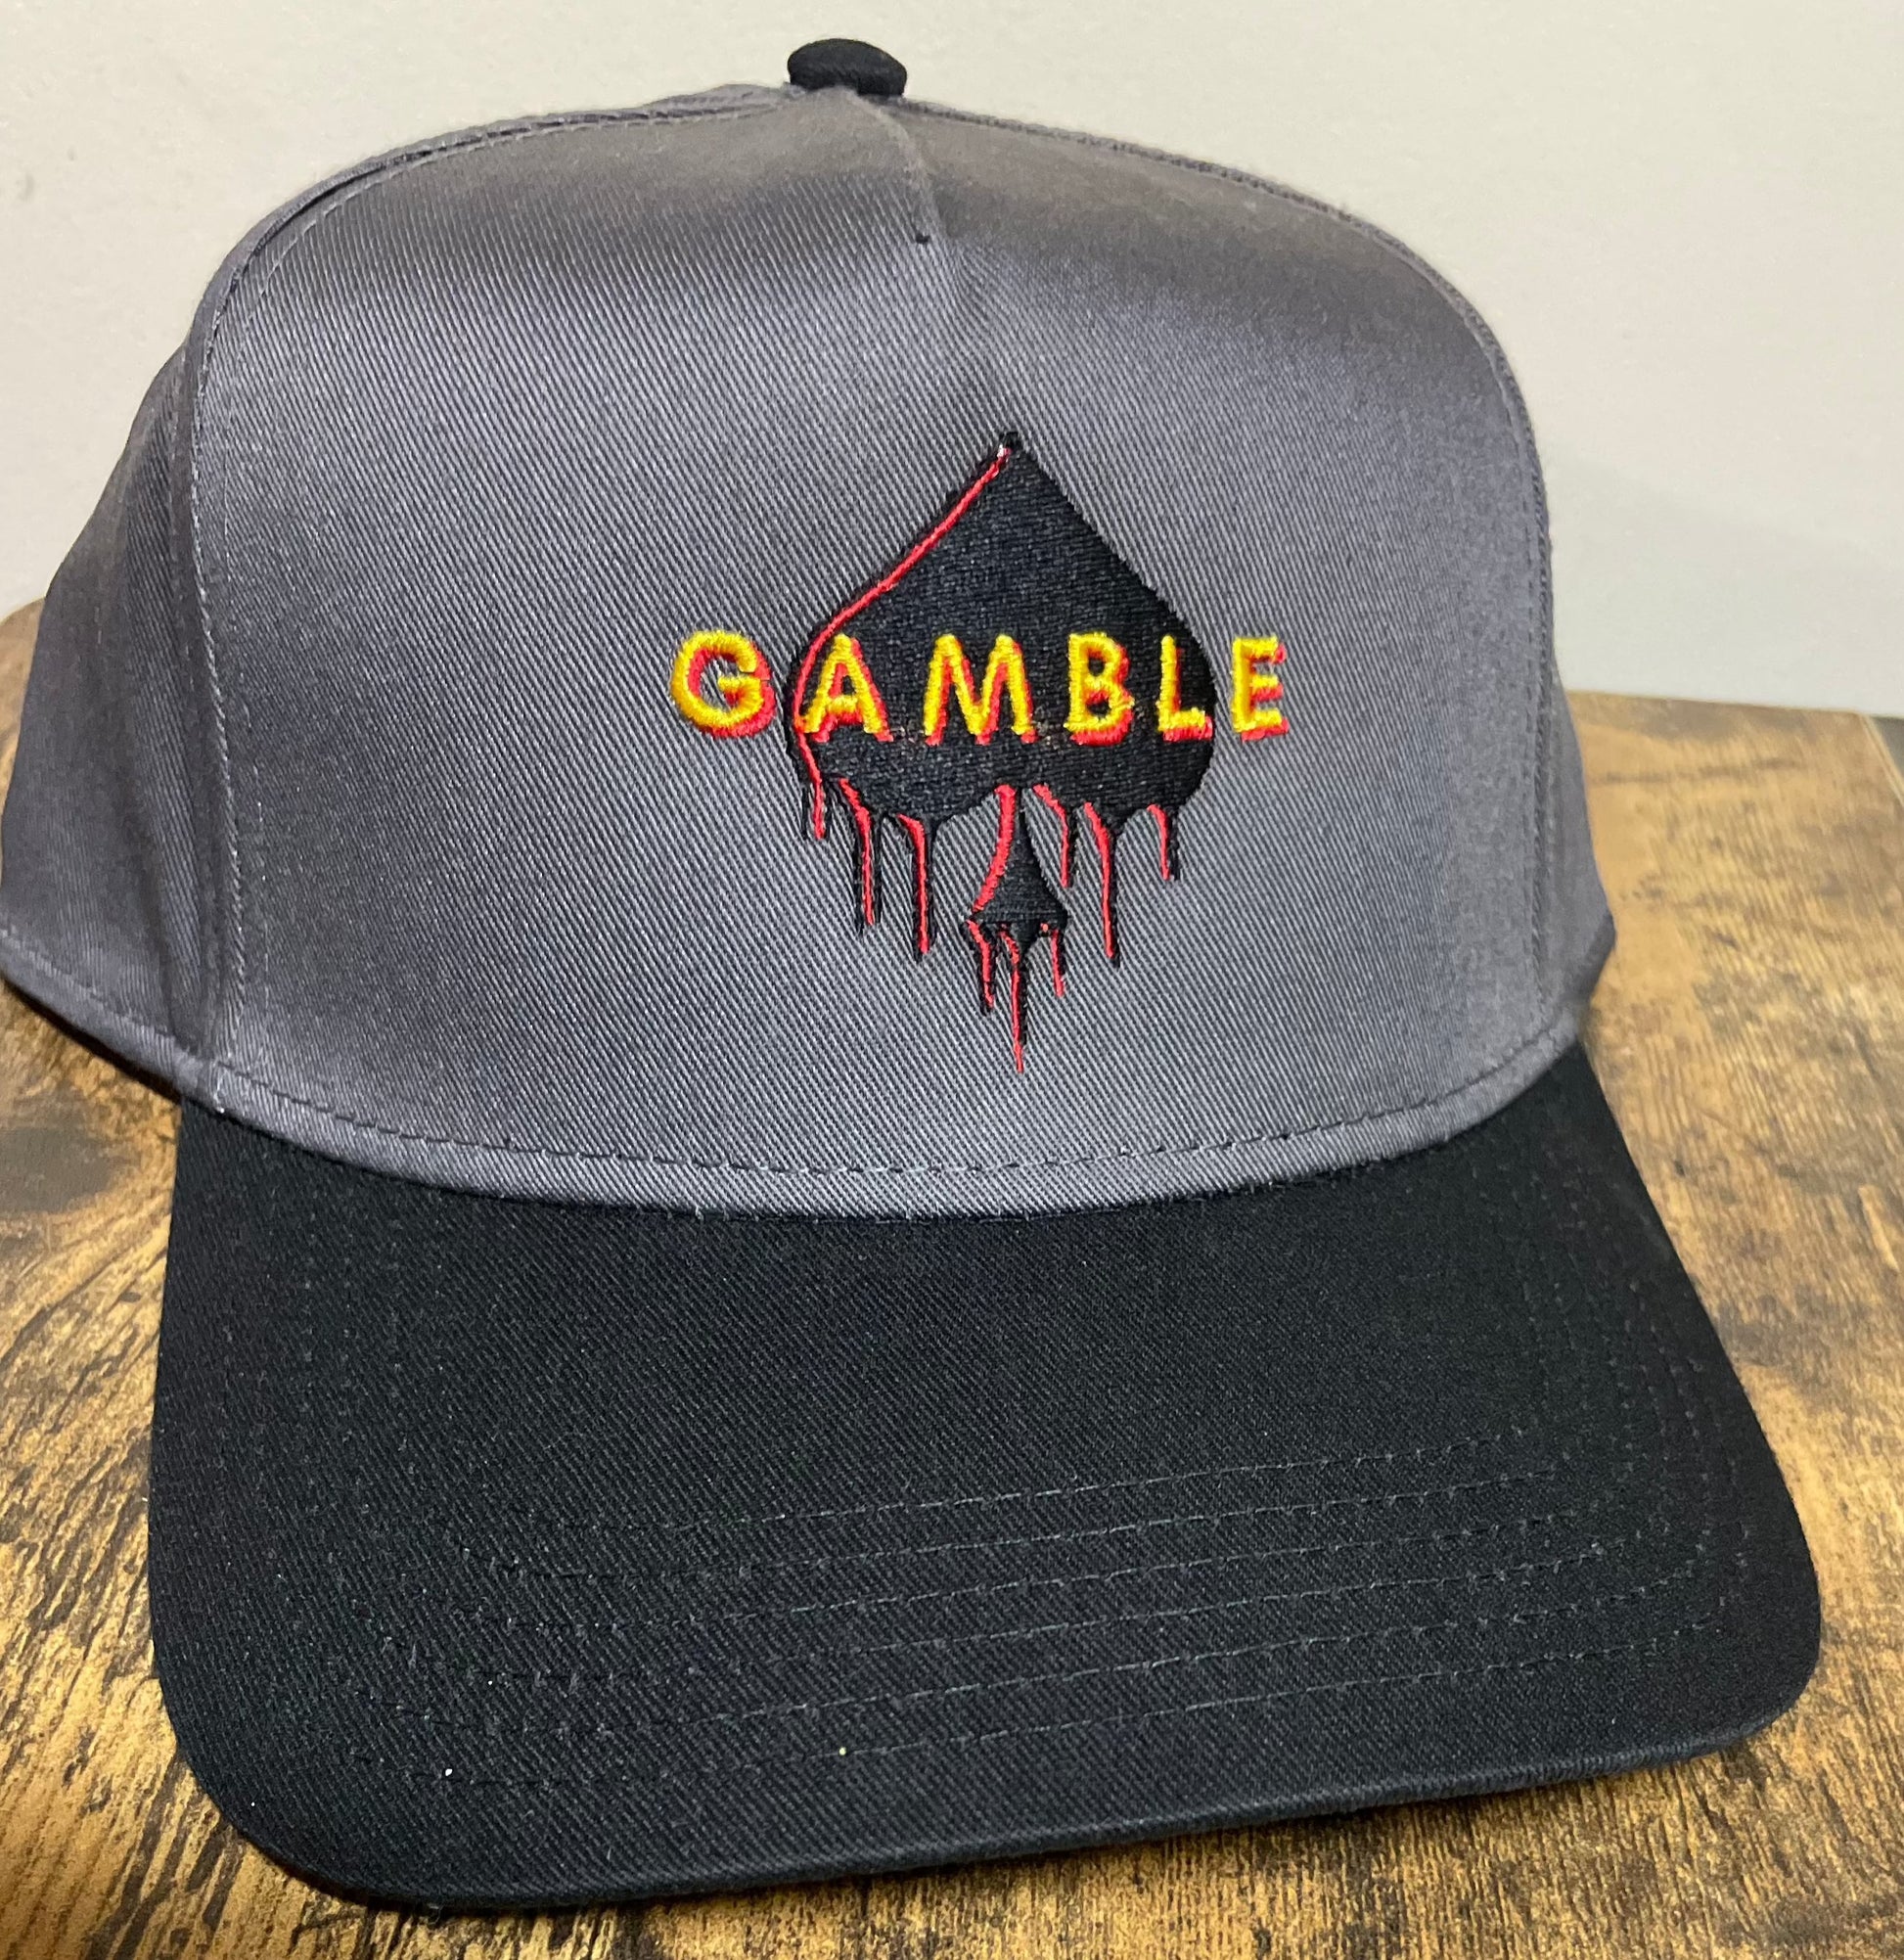 Grey & Black Baseball Hat for Gamblers